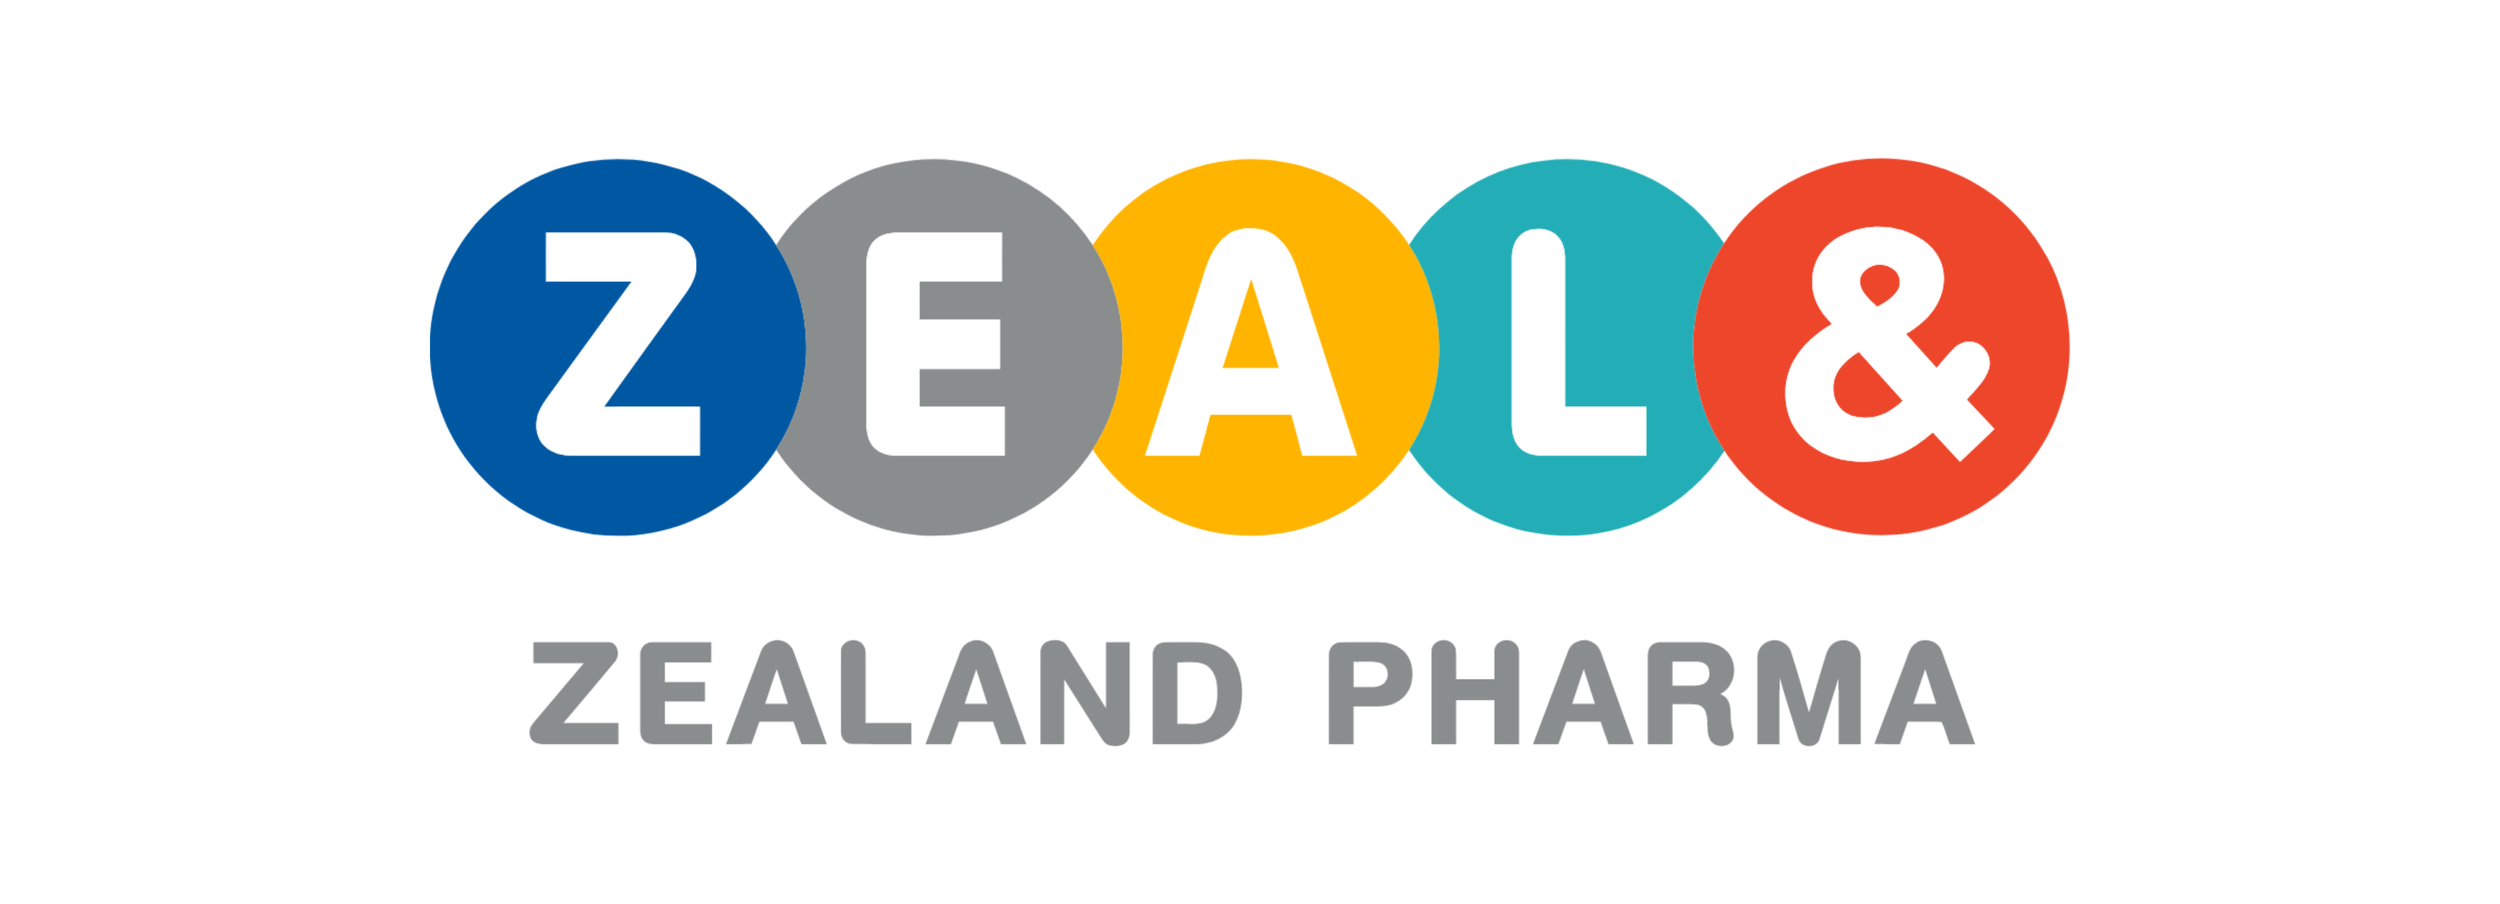 zealand pharma logo